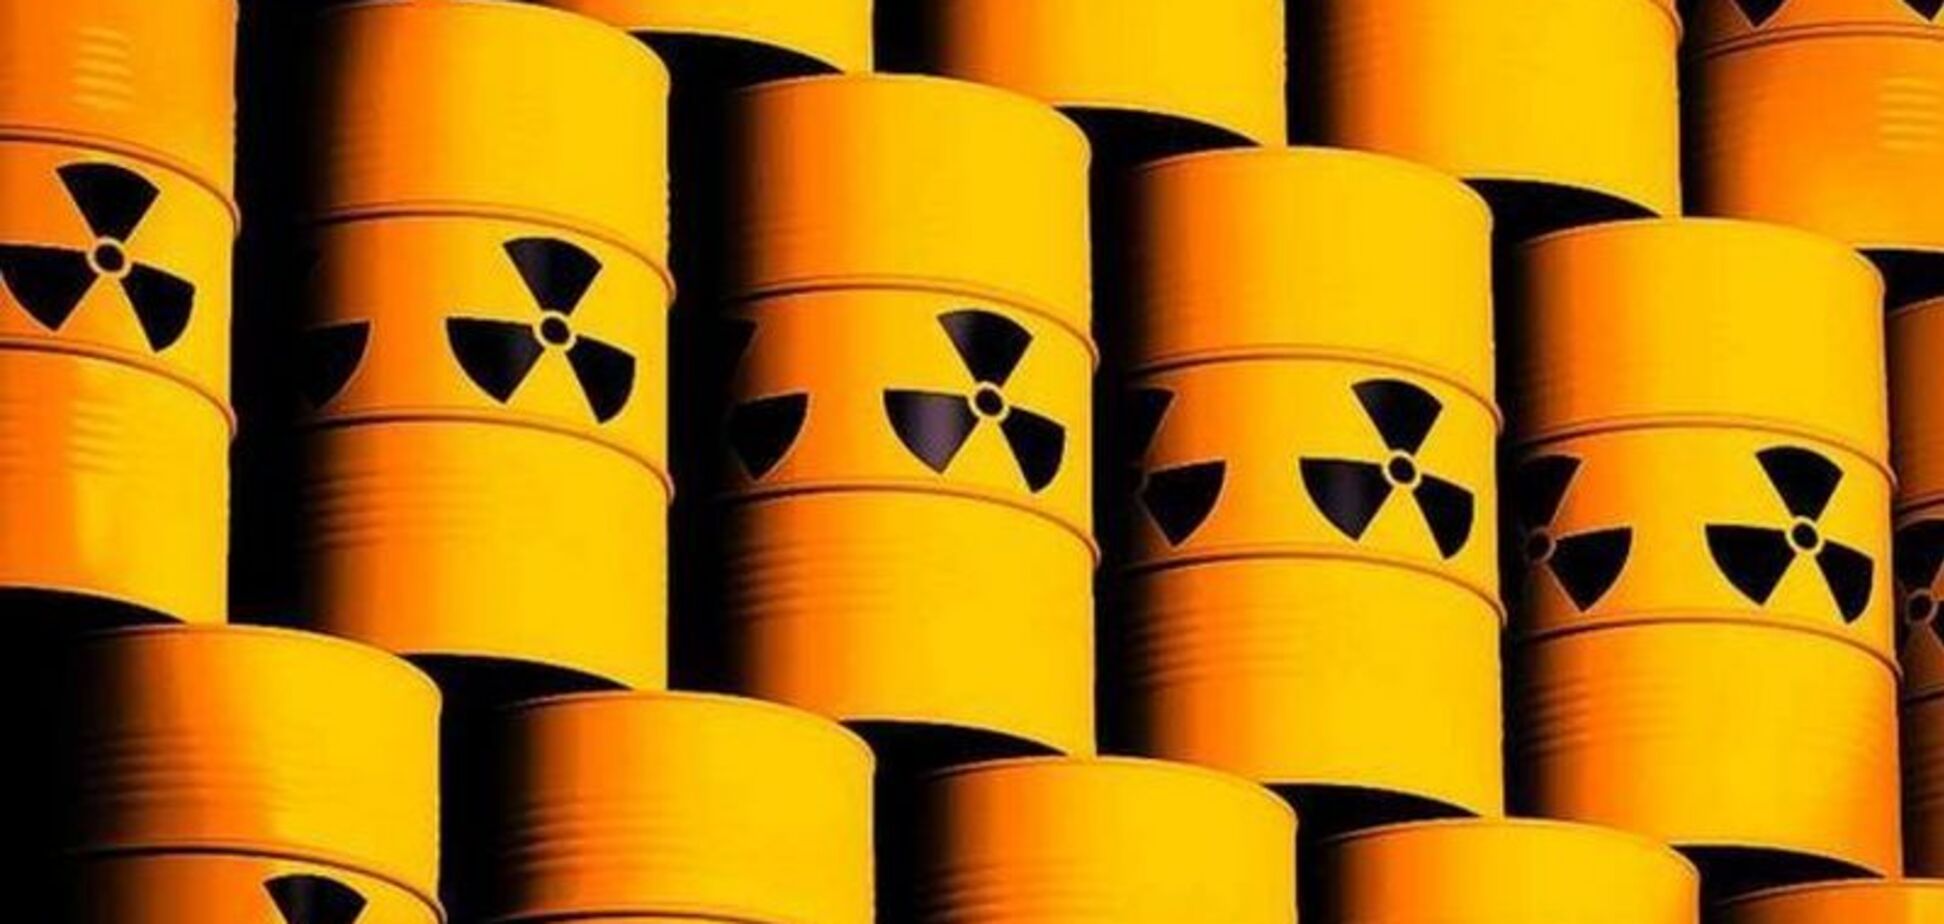 Україна попросила РФ відновити ядерну співпрацю: офіційний лист